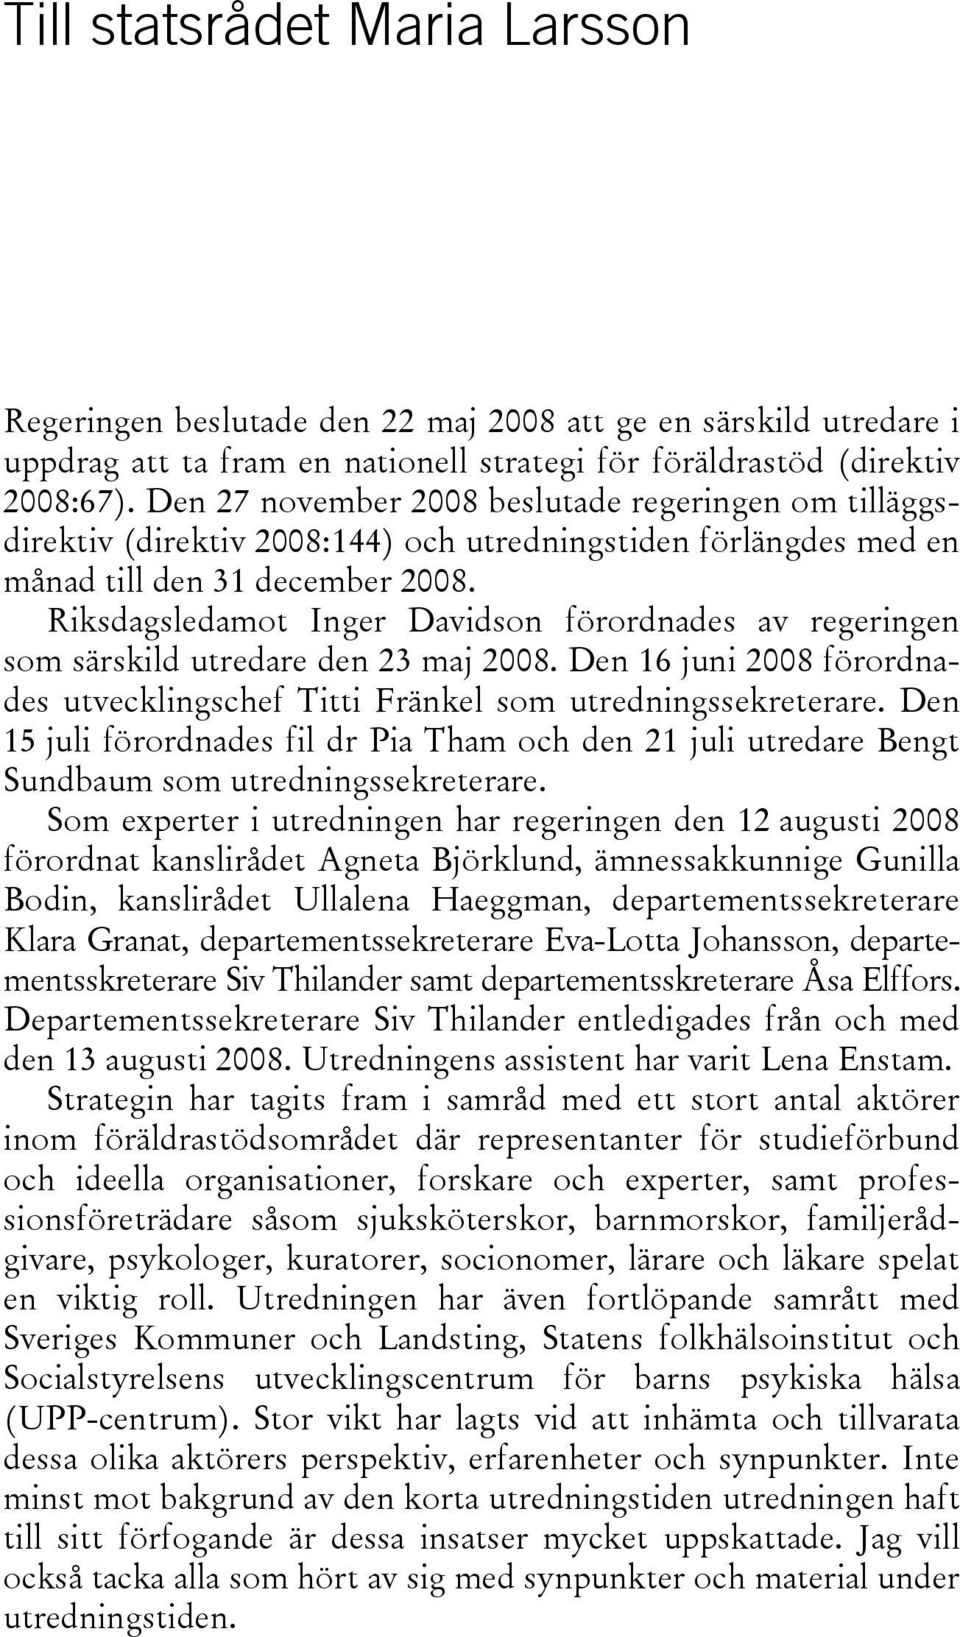 Riksdagsledamot Inger Davidson förordnades av regeringen som särskild utredare den 23 maj 2008. Den 16 juni 2008 förordnades utvecklingschef Titti Fränkel som utredningssekreterare.